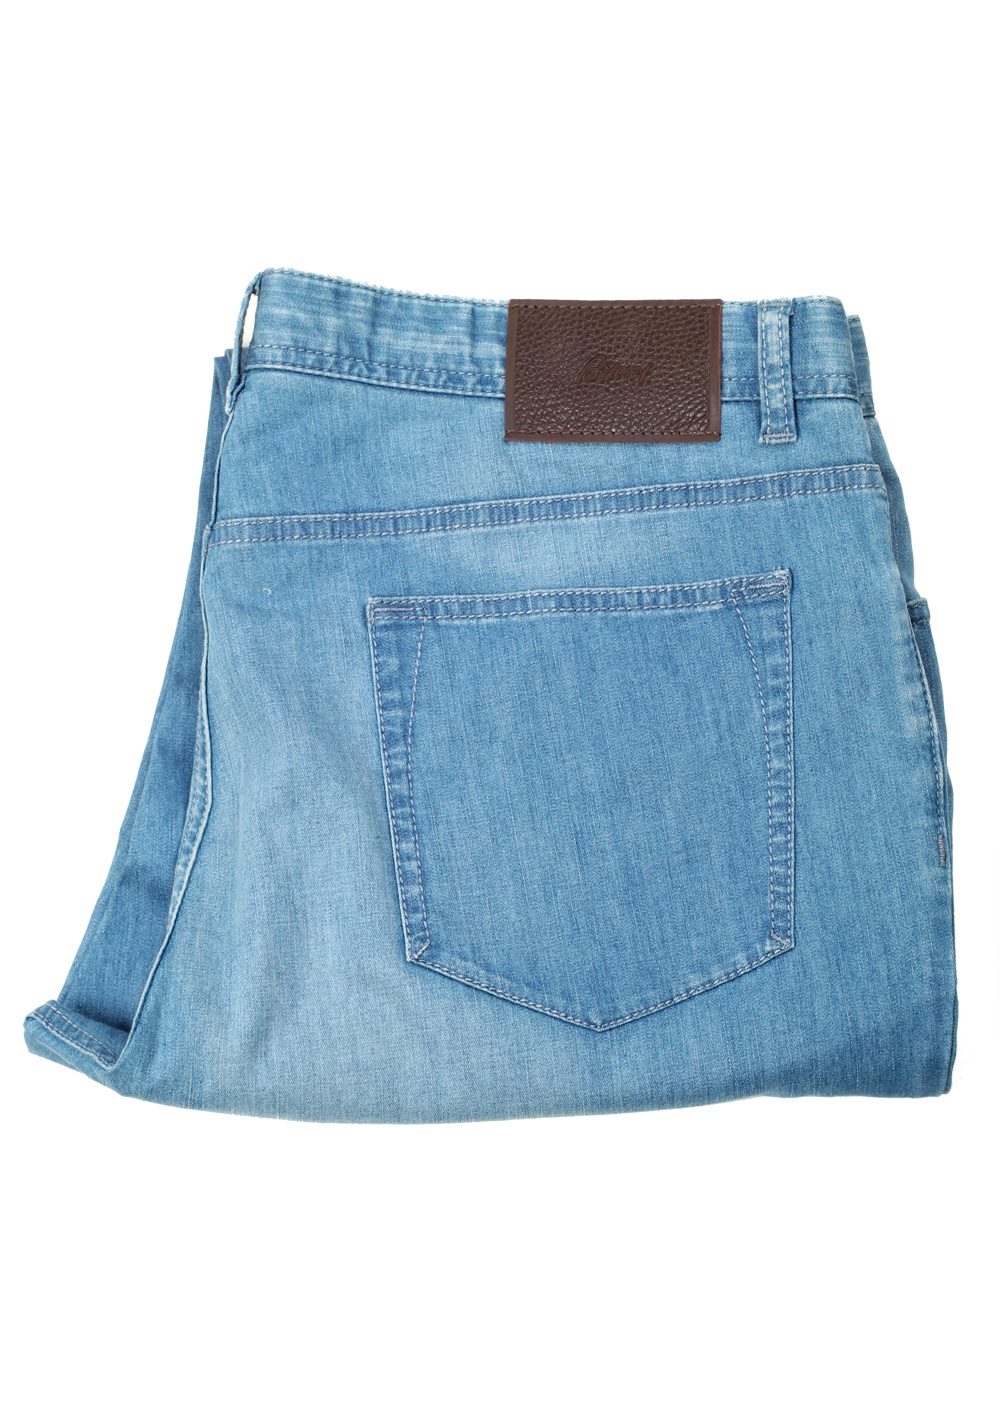 Brioni Blue Jeans Trousers Size 54 / 38 U.S. | Costume Limité